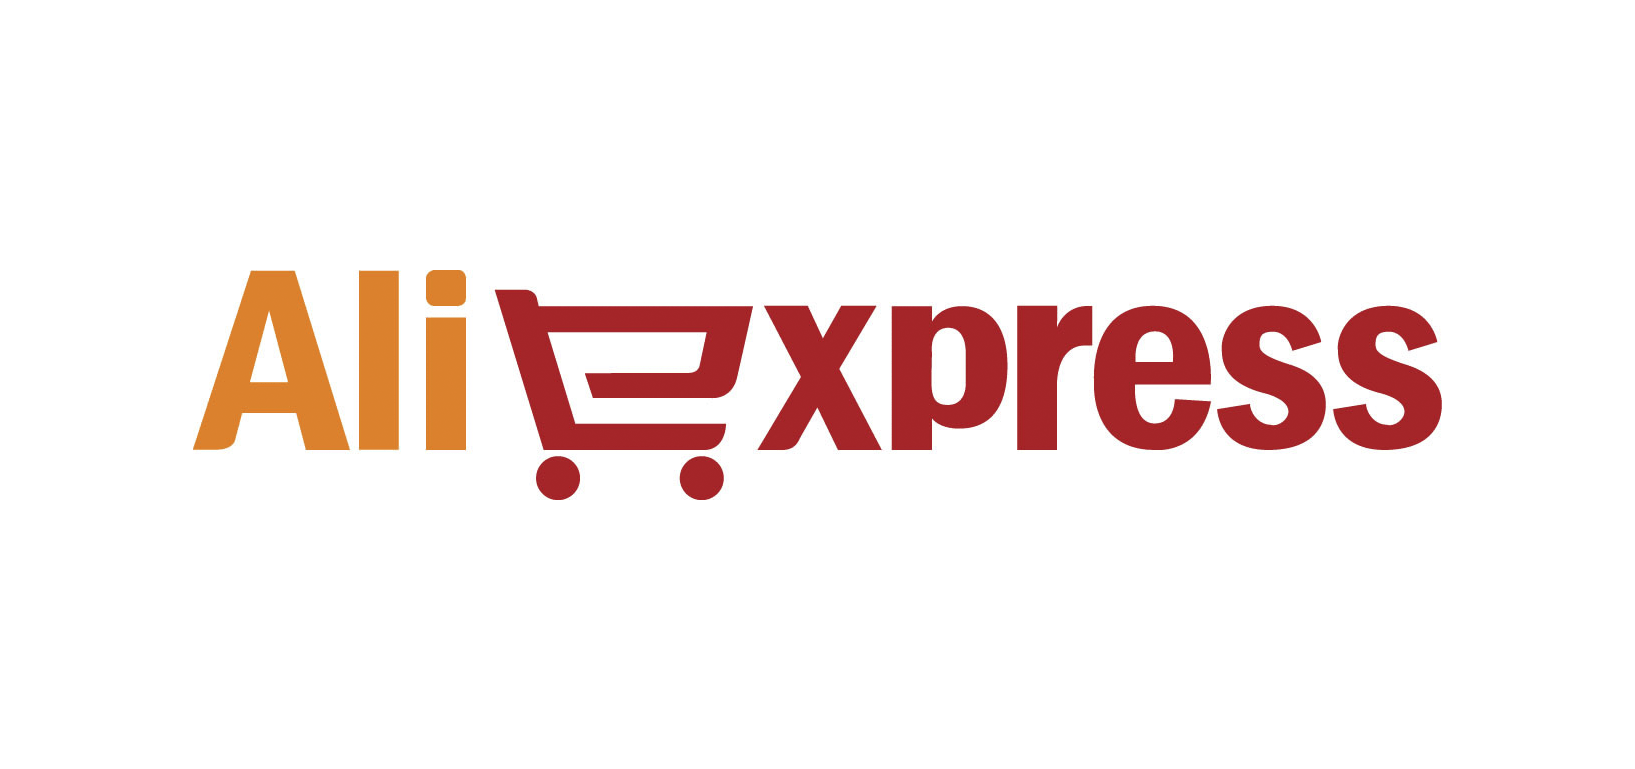 Aliexpress-China.png